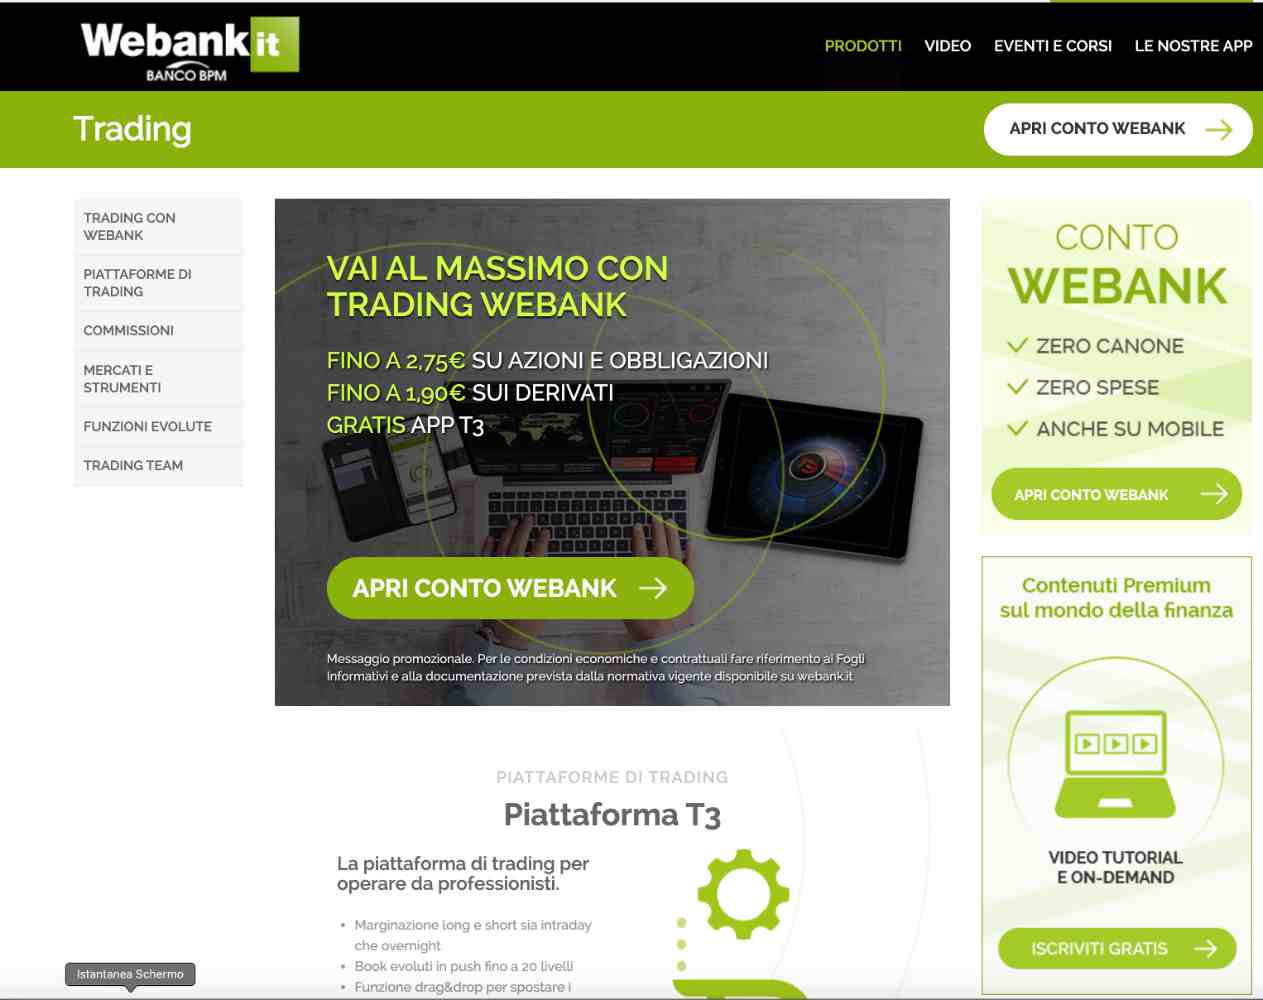 Trading con Webank come funziona? Recensioni ed Opinioni